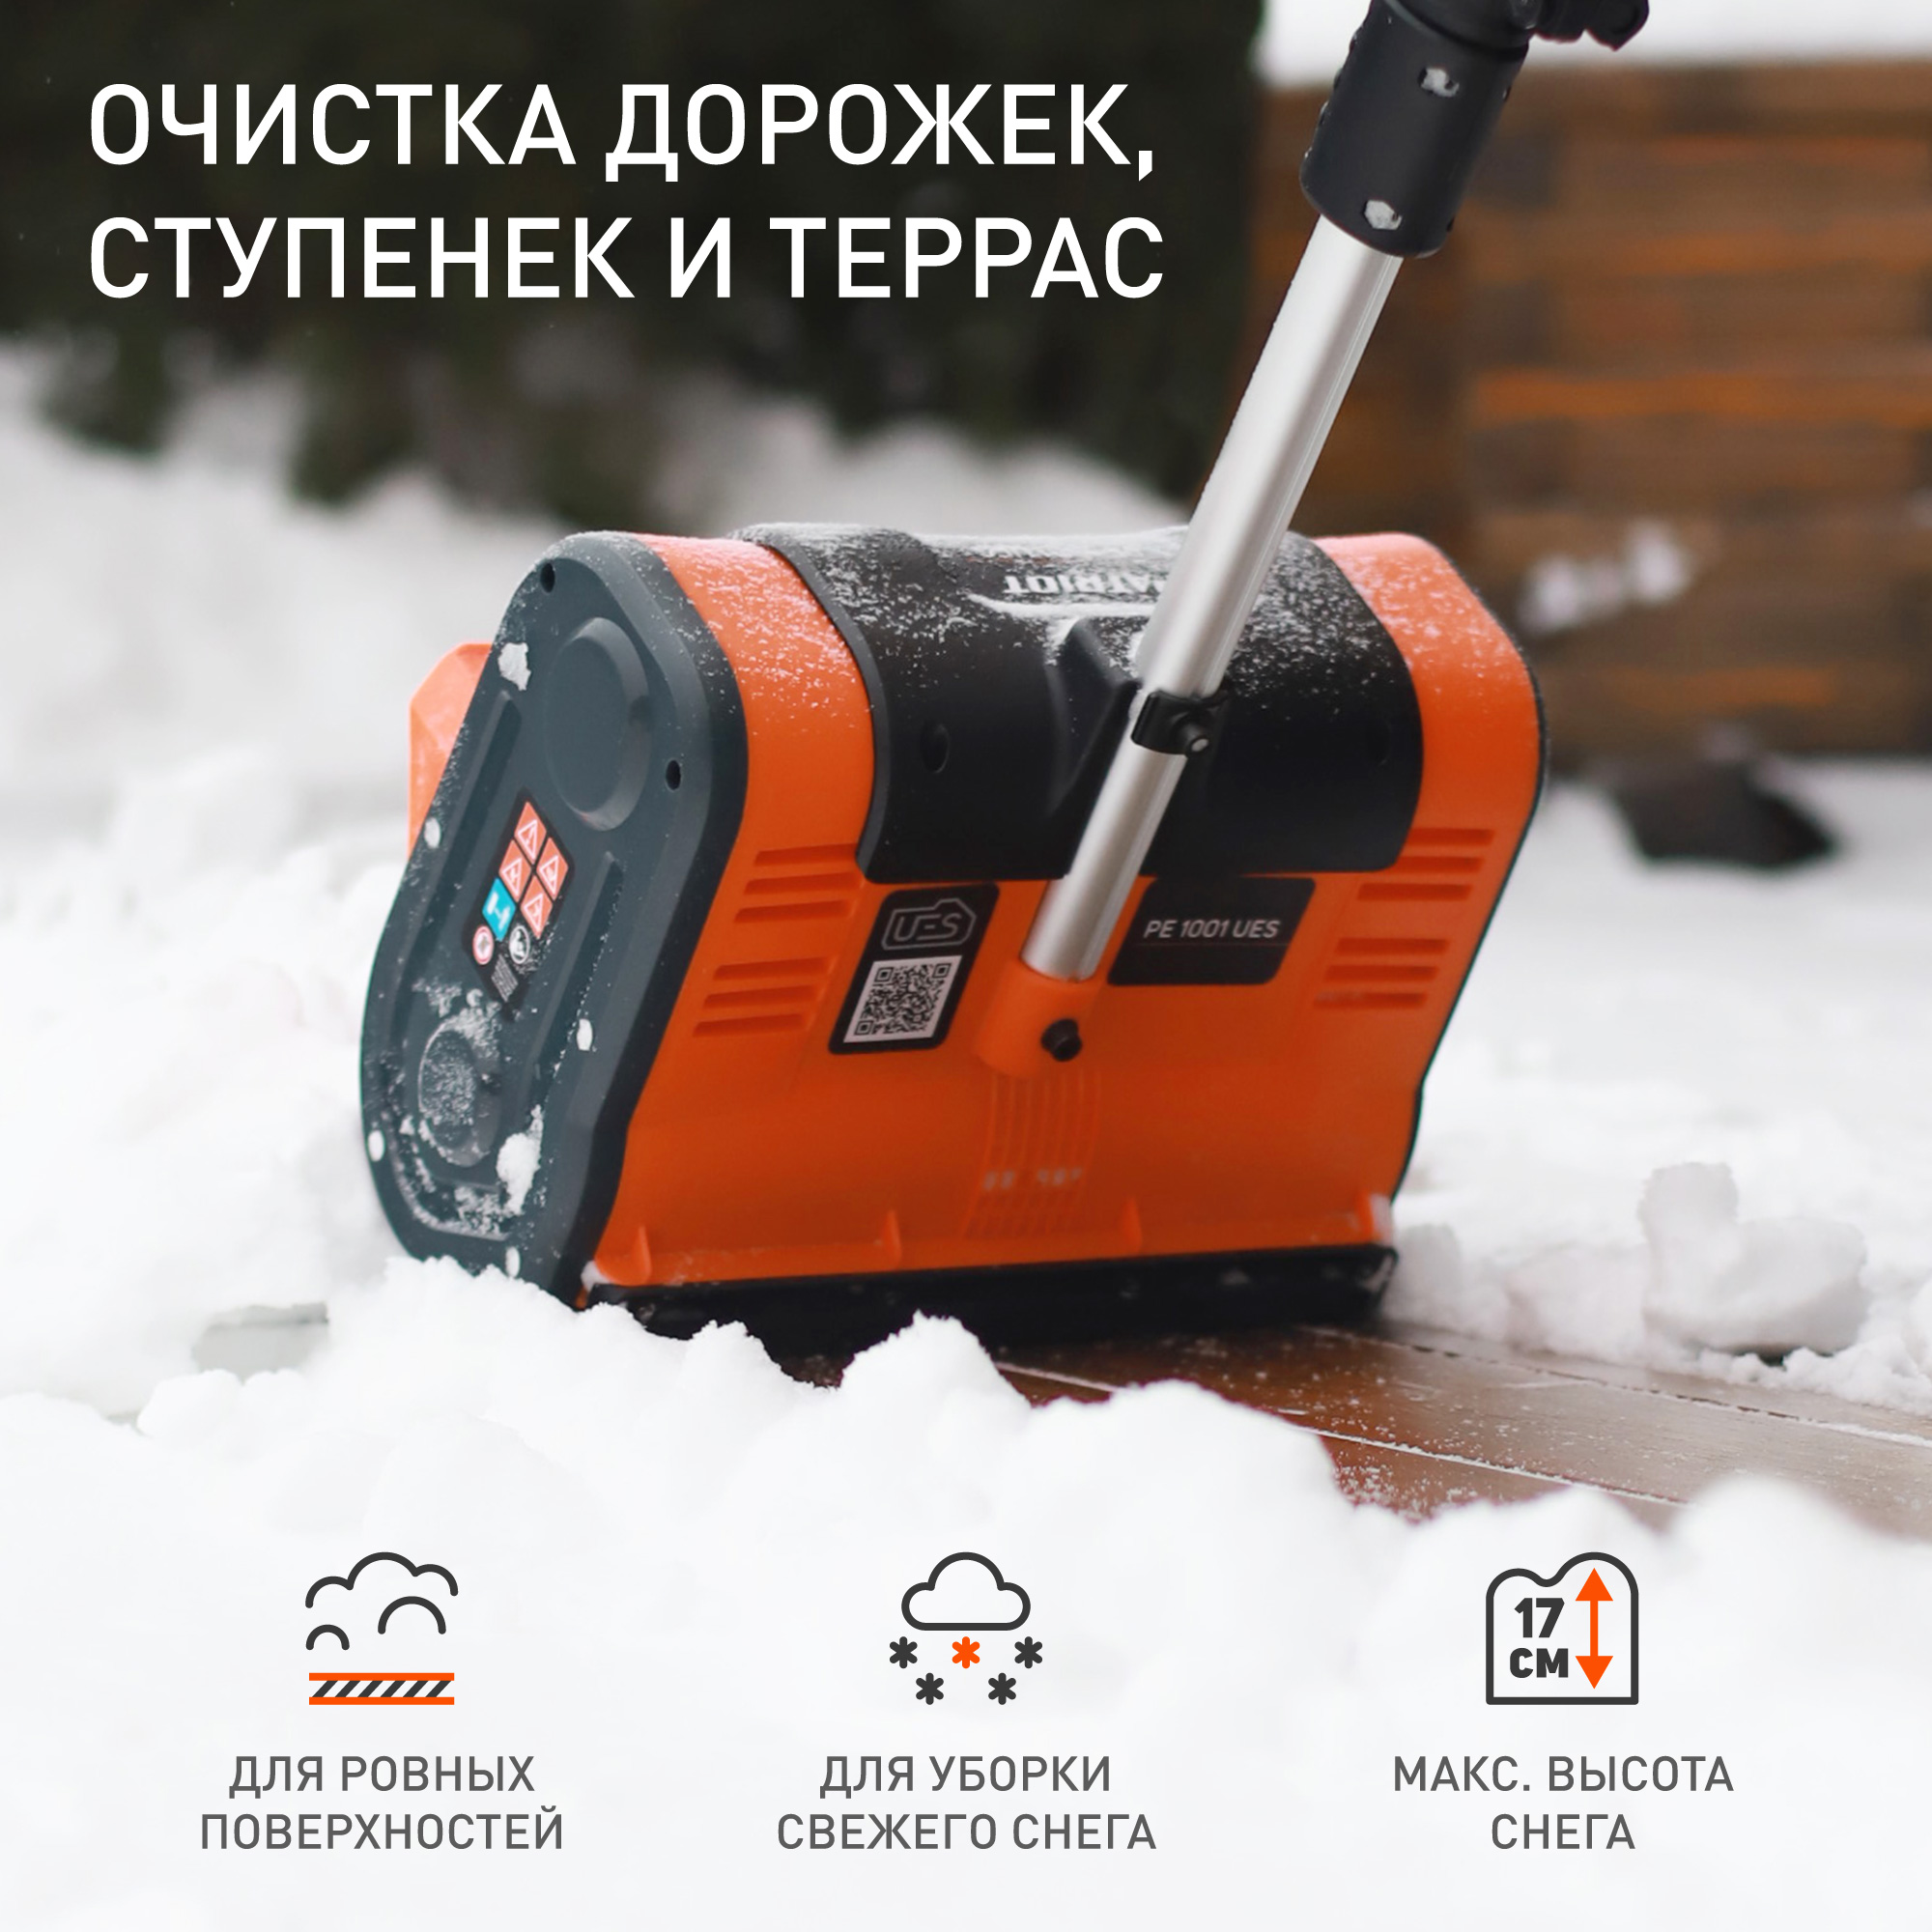 Снегоуборщик аккумуляторный ручной PATRIOT PE 1001 UES